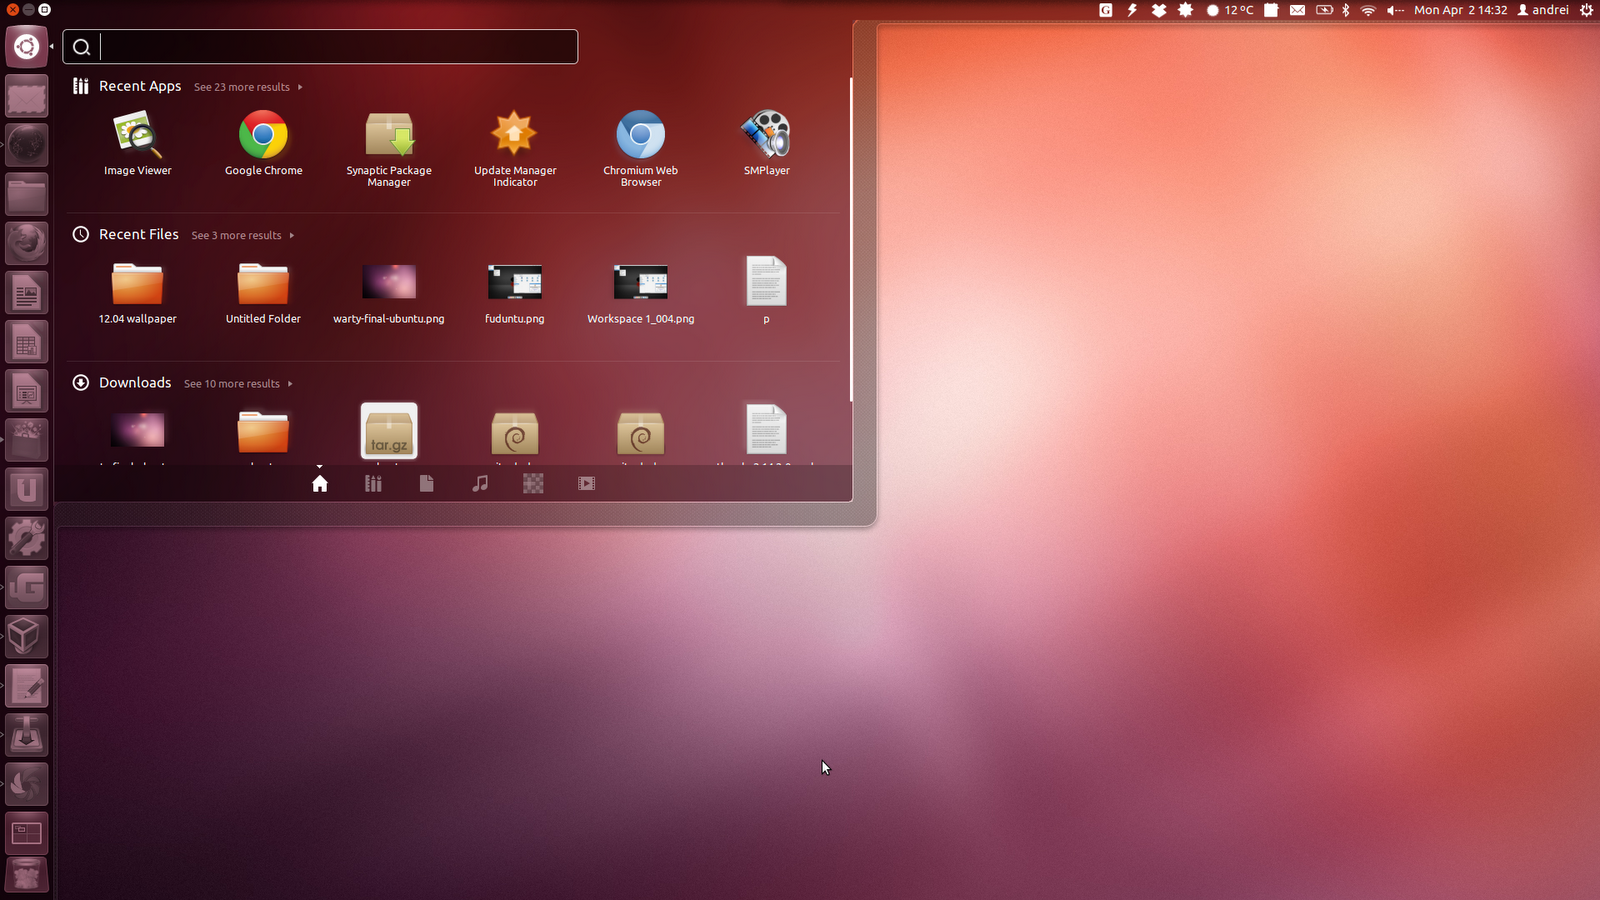 download ubuntu 14.04 vmware image